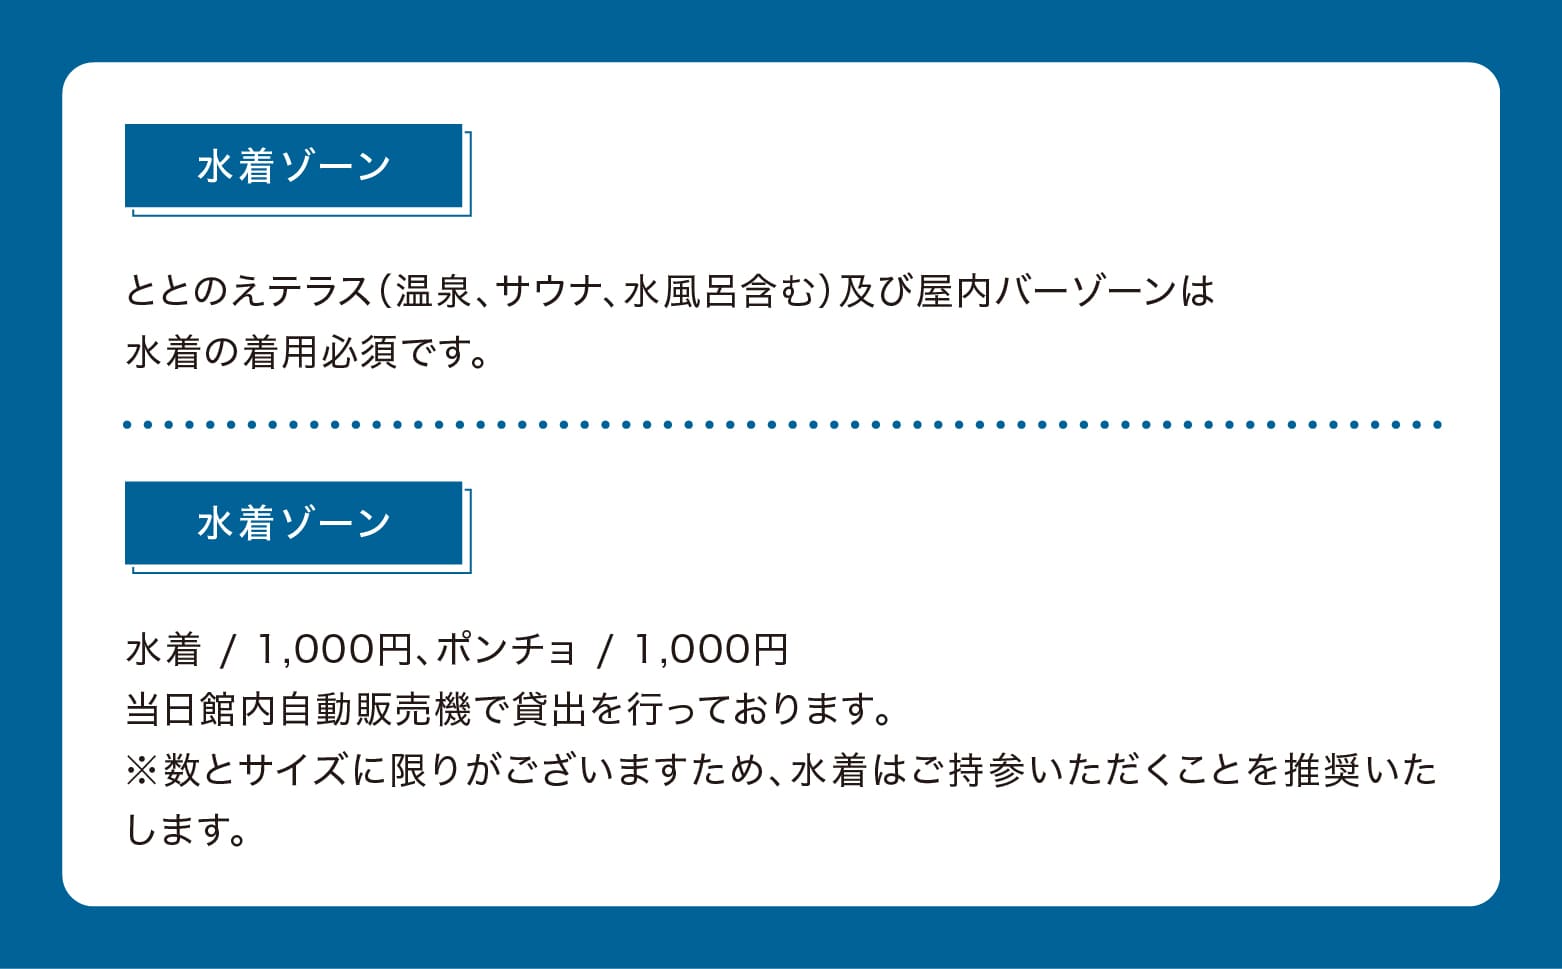 【試合がない日】tower eleven onsen & sauna 一般温浴チケット